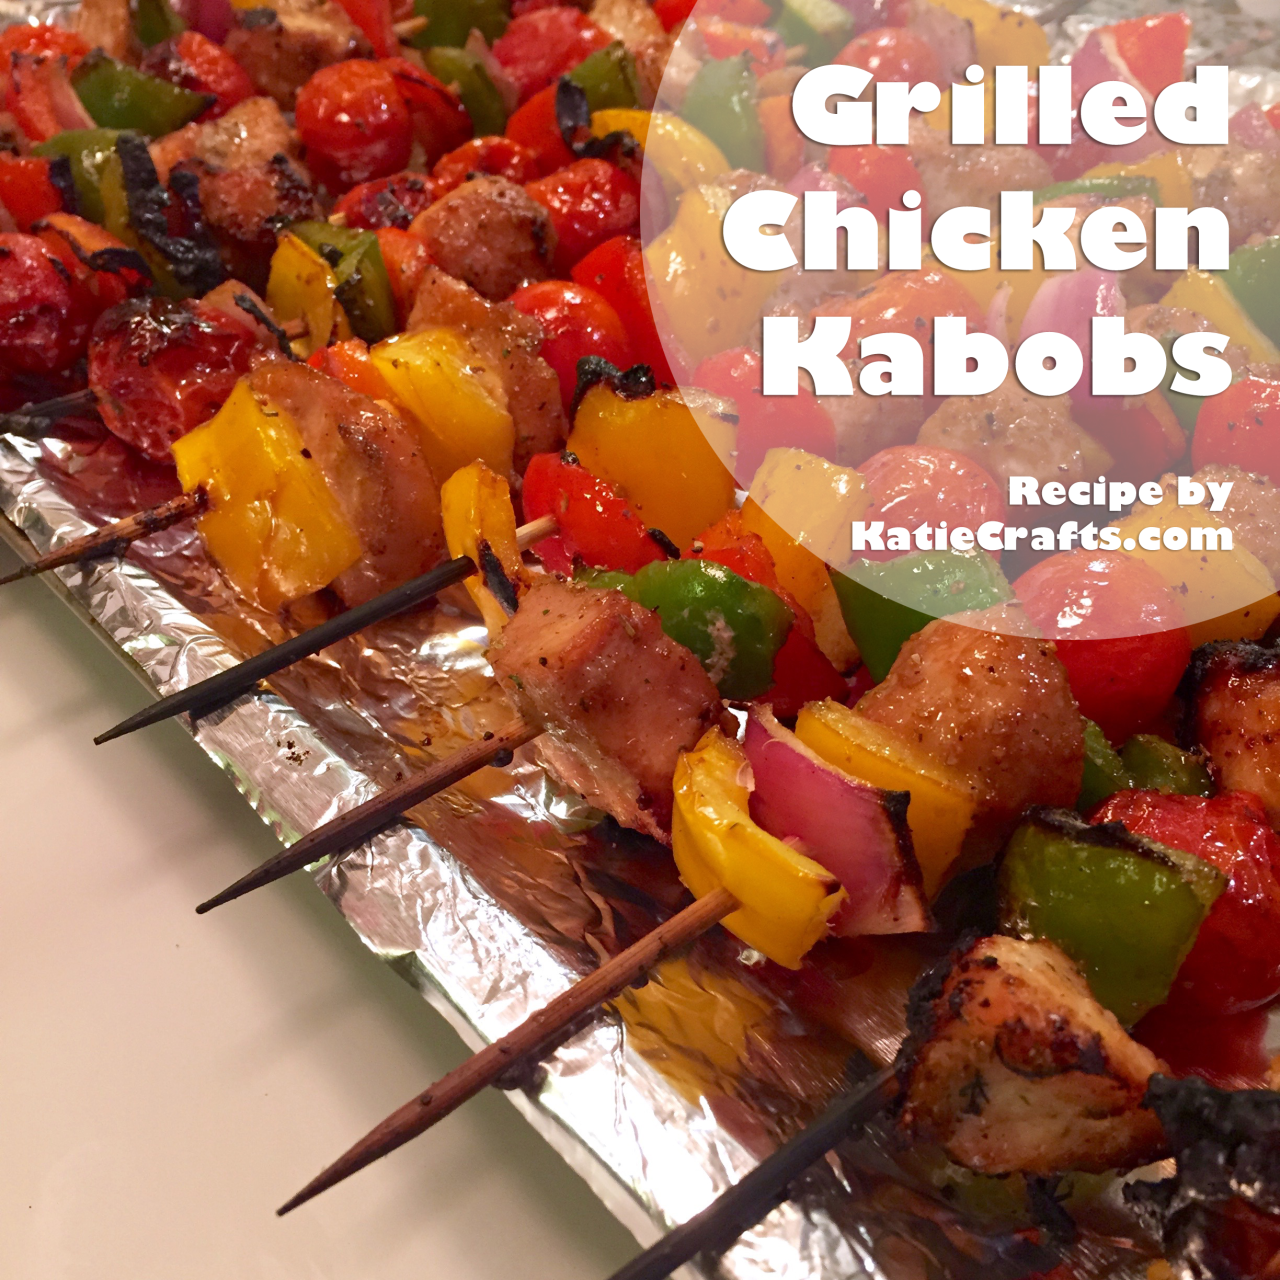 Grilled Chicken Kabobs Recipe by Katie Crafts; https://www.katiecrafts.com